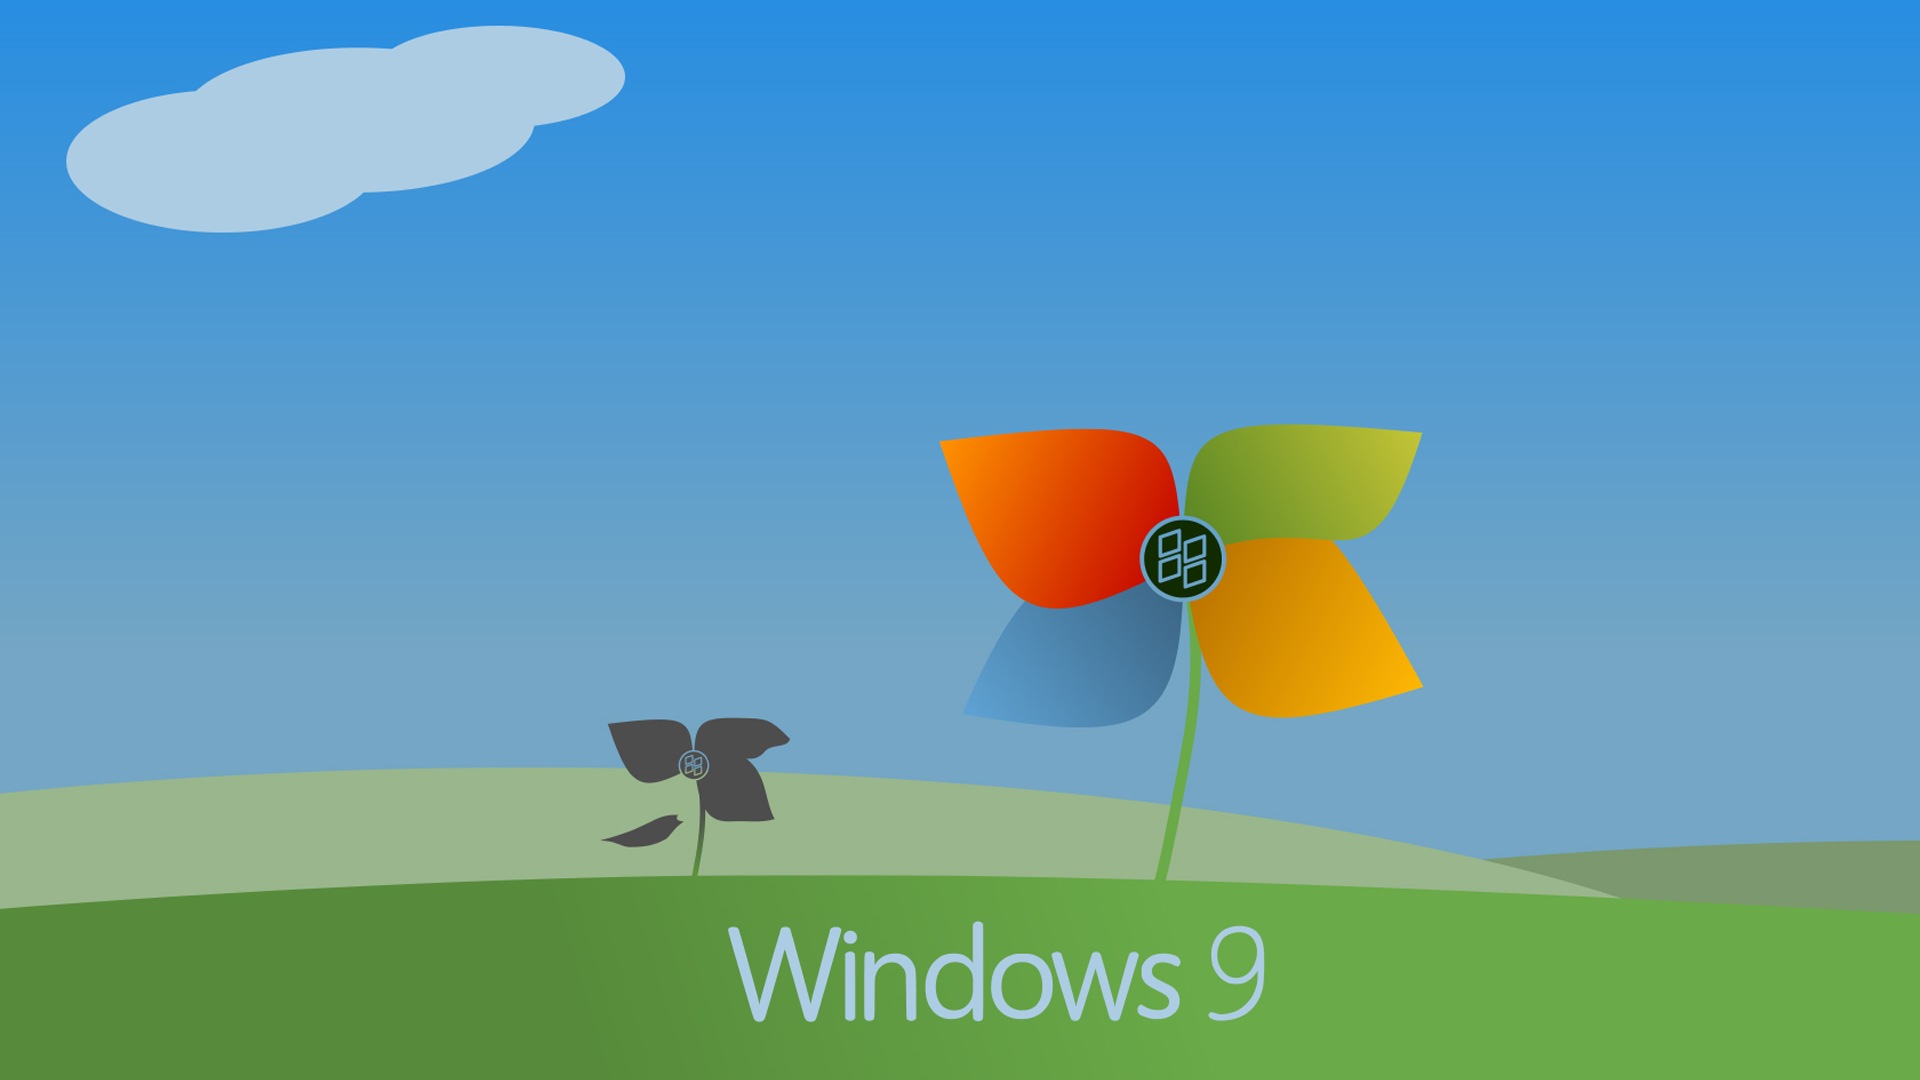 微软 Windows 9 系统主题 高清壁纸5 - 1920x1080